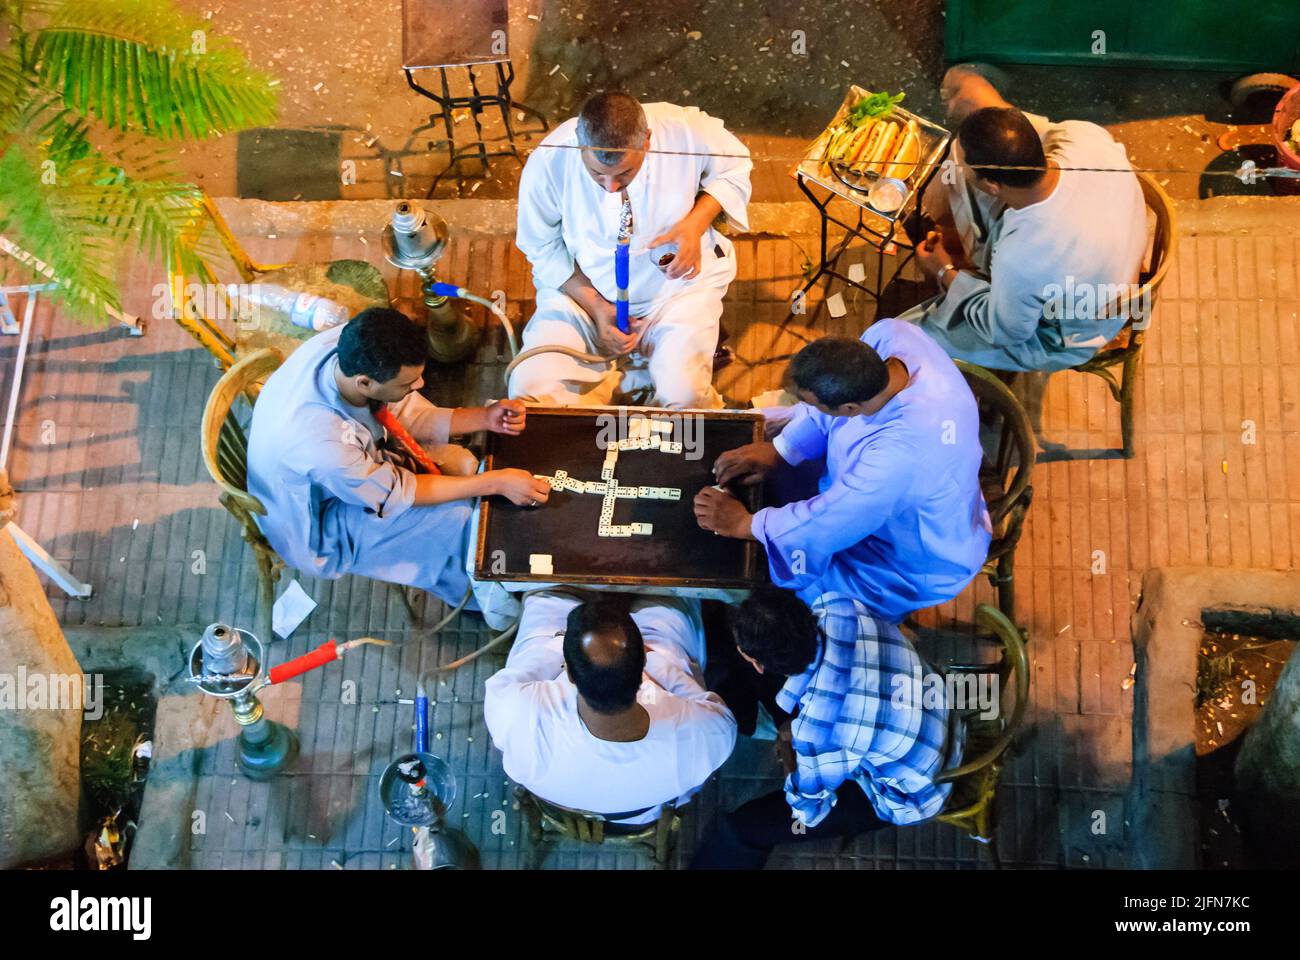 Egyptian men playing dominoes - Luxor, Upper Egypt Stock Photo